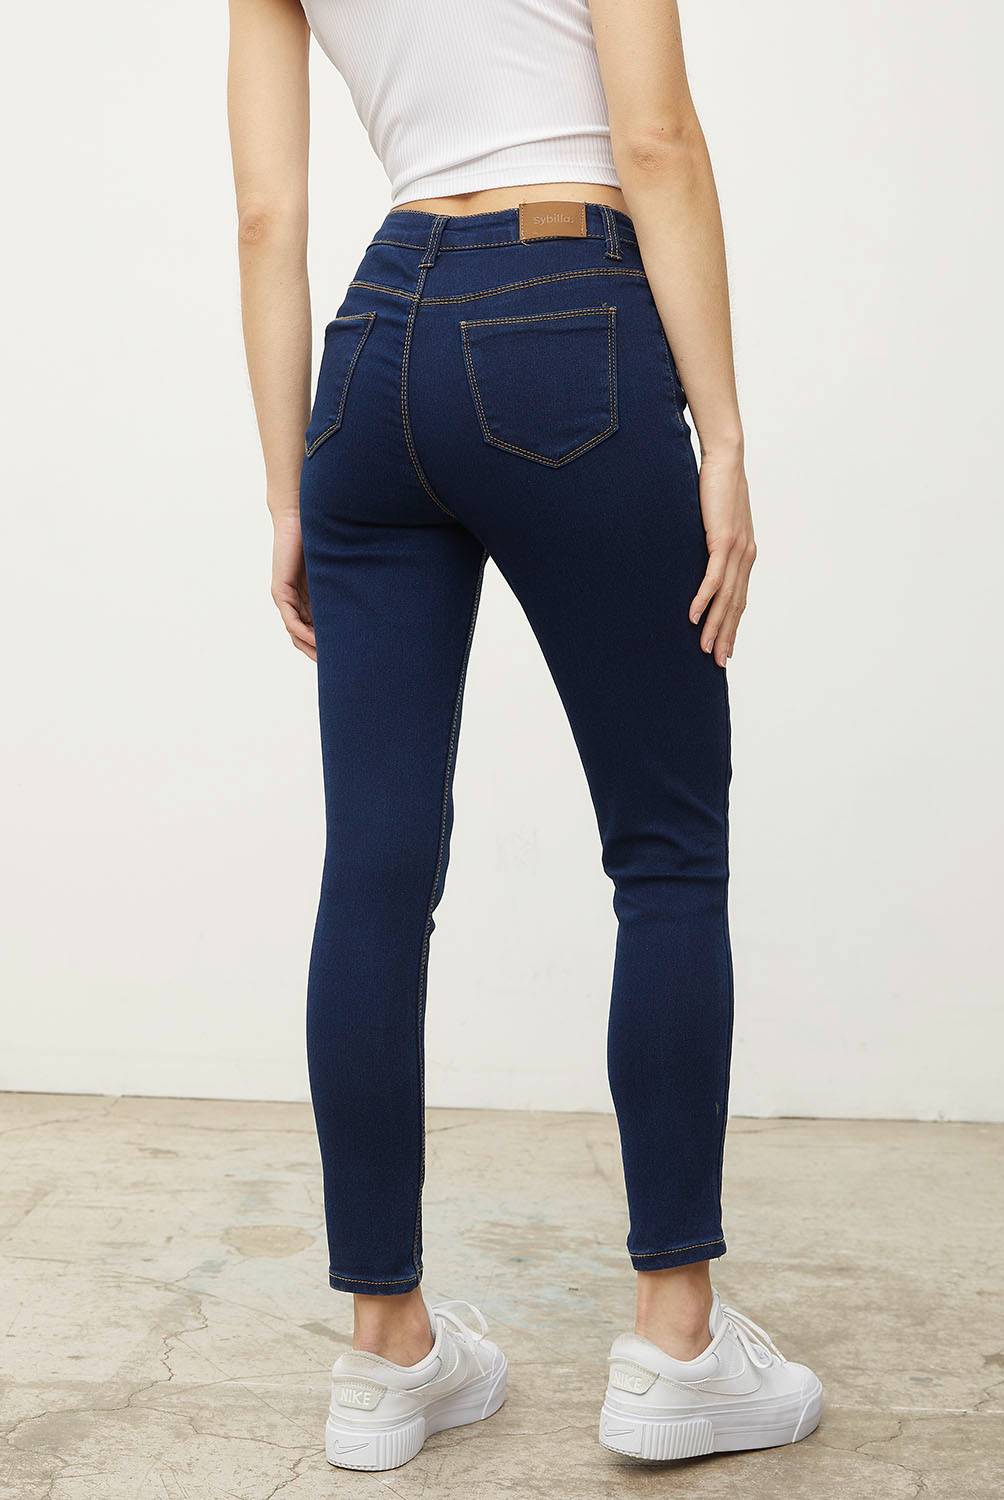 Jeans Skinny Tiro Bajo Denim Mujer Sybilla